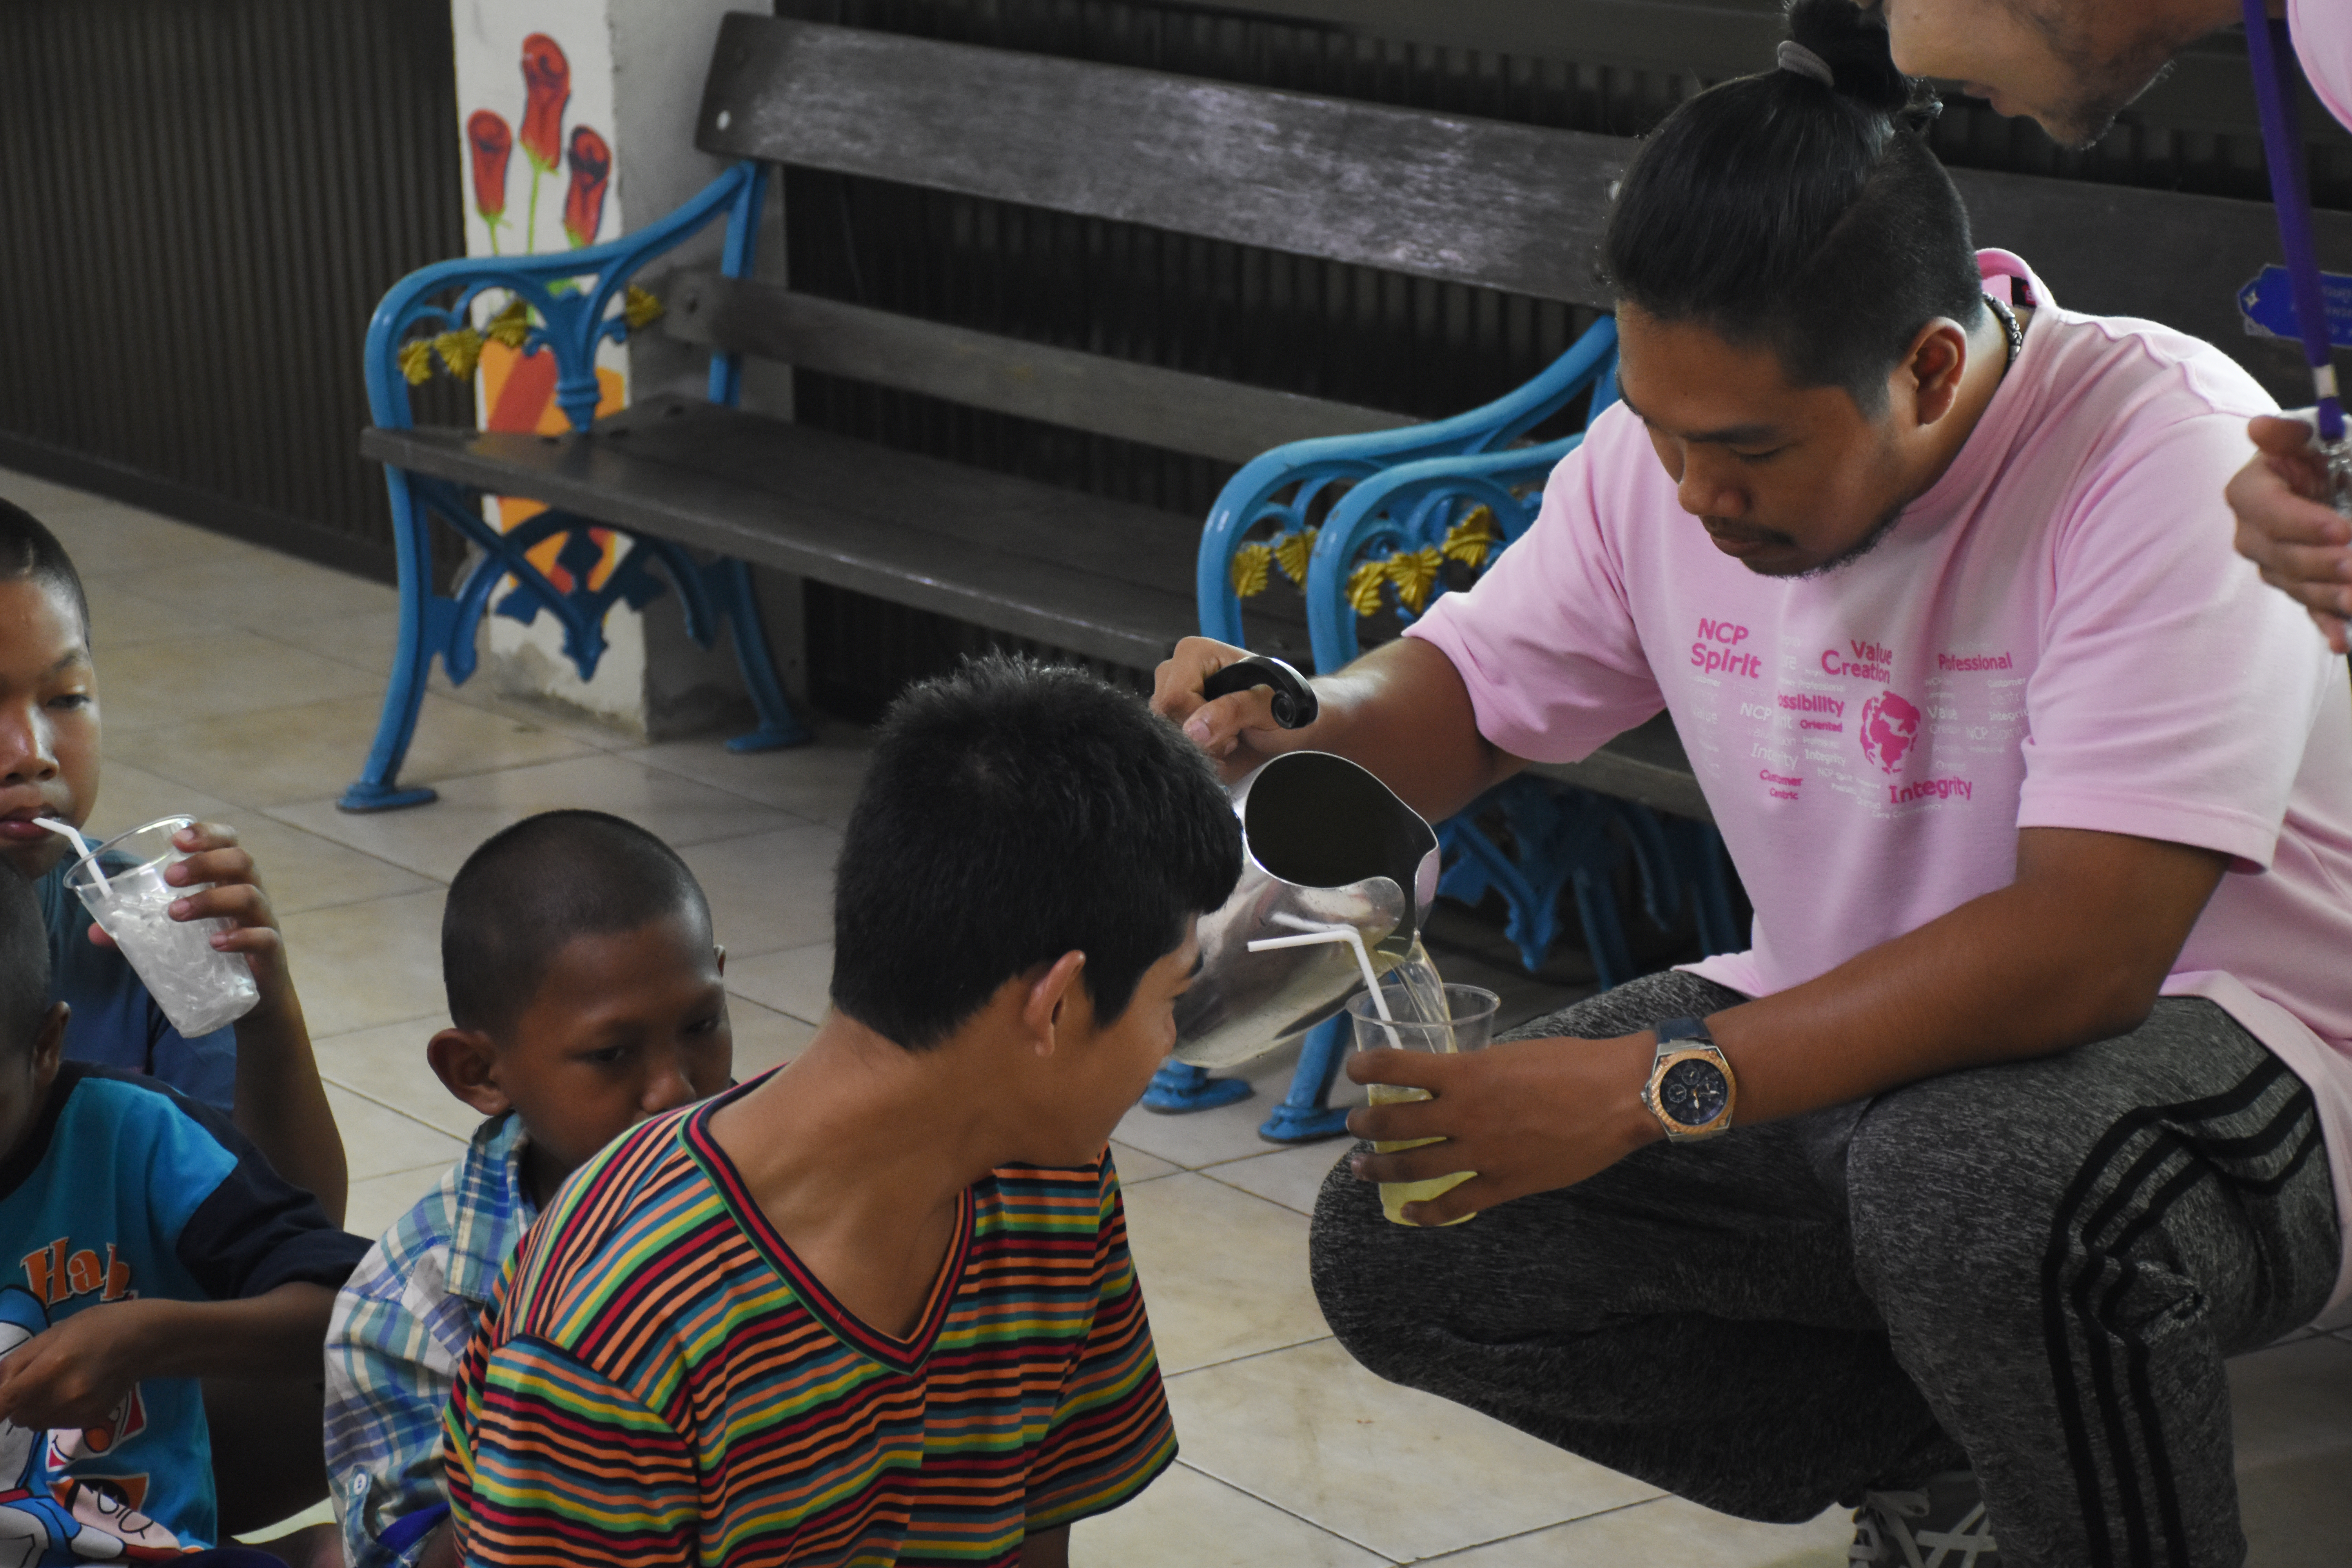 NCP ส่งเสริมเยาวชนเข้มแข็ง มอบผลิตภัณฑ์เพื่อสุขภาพให้บ้านเด็กธรรมรักษ์ ลพบุรี